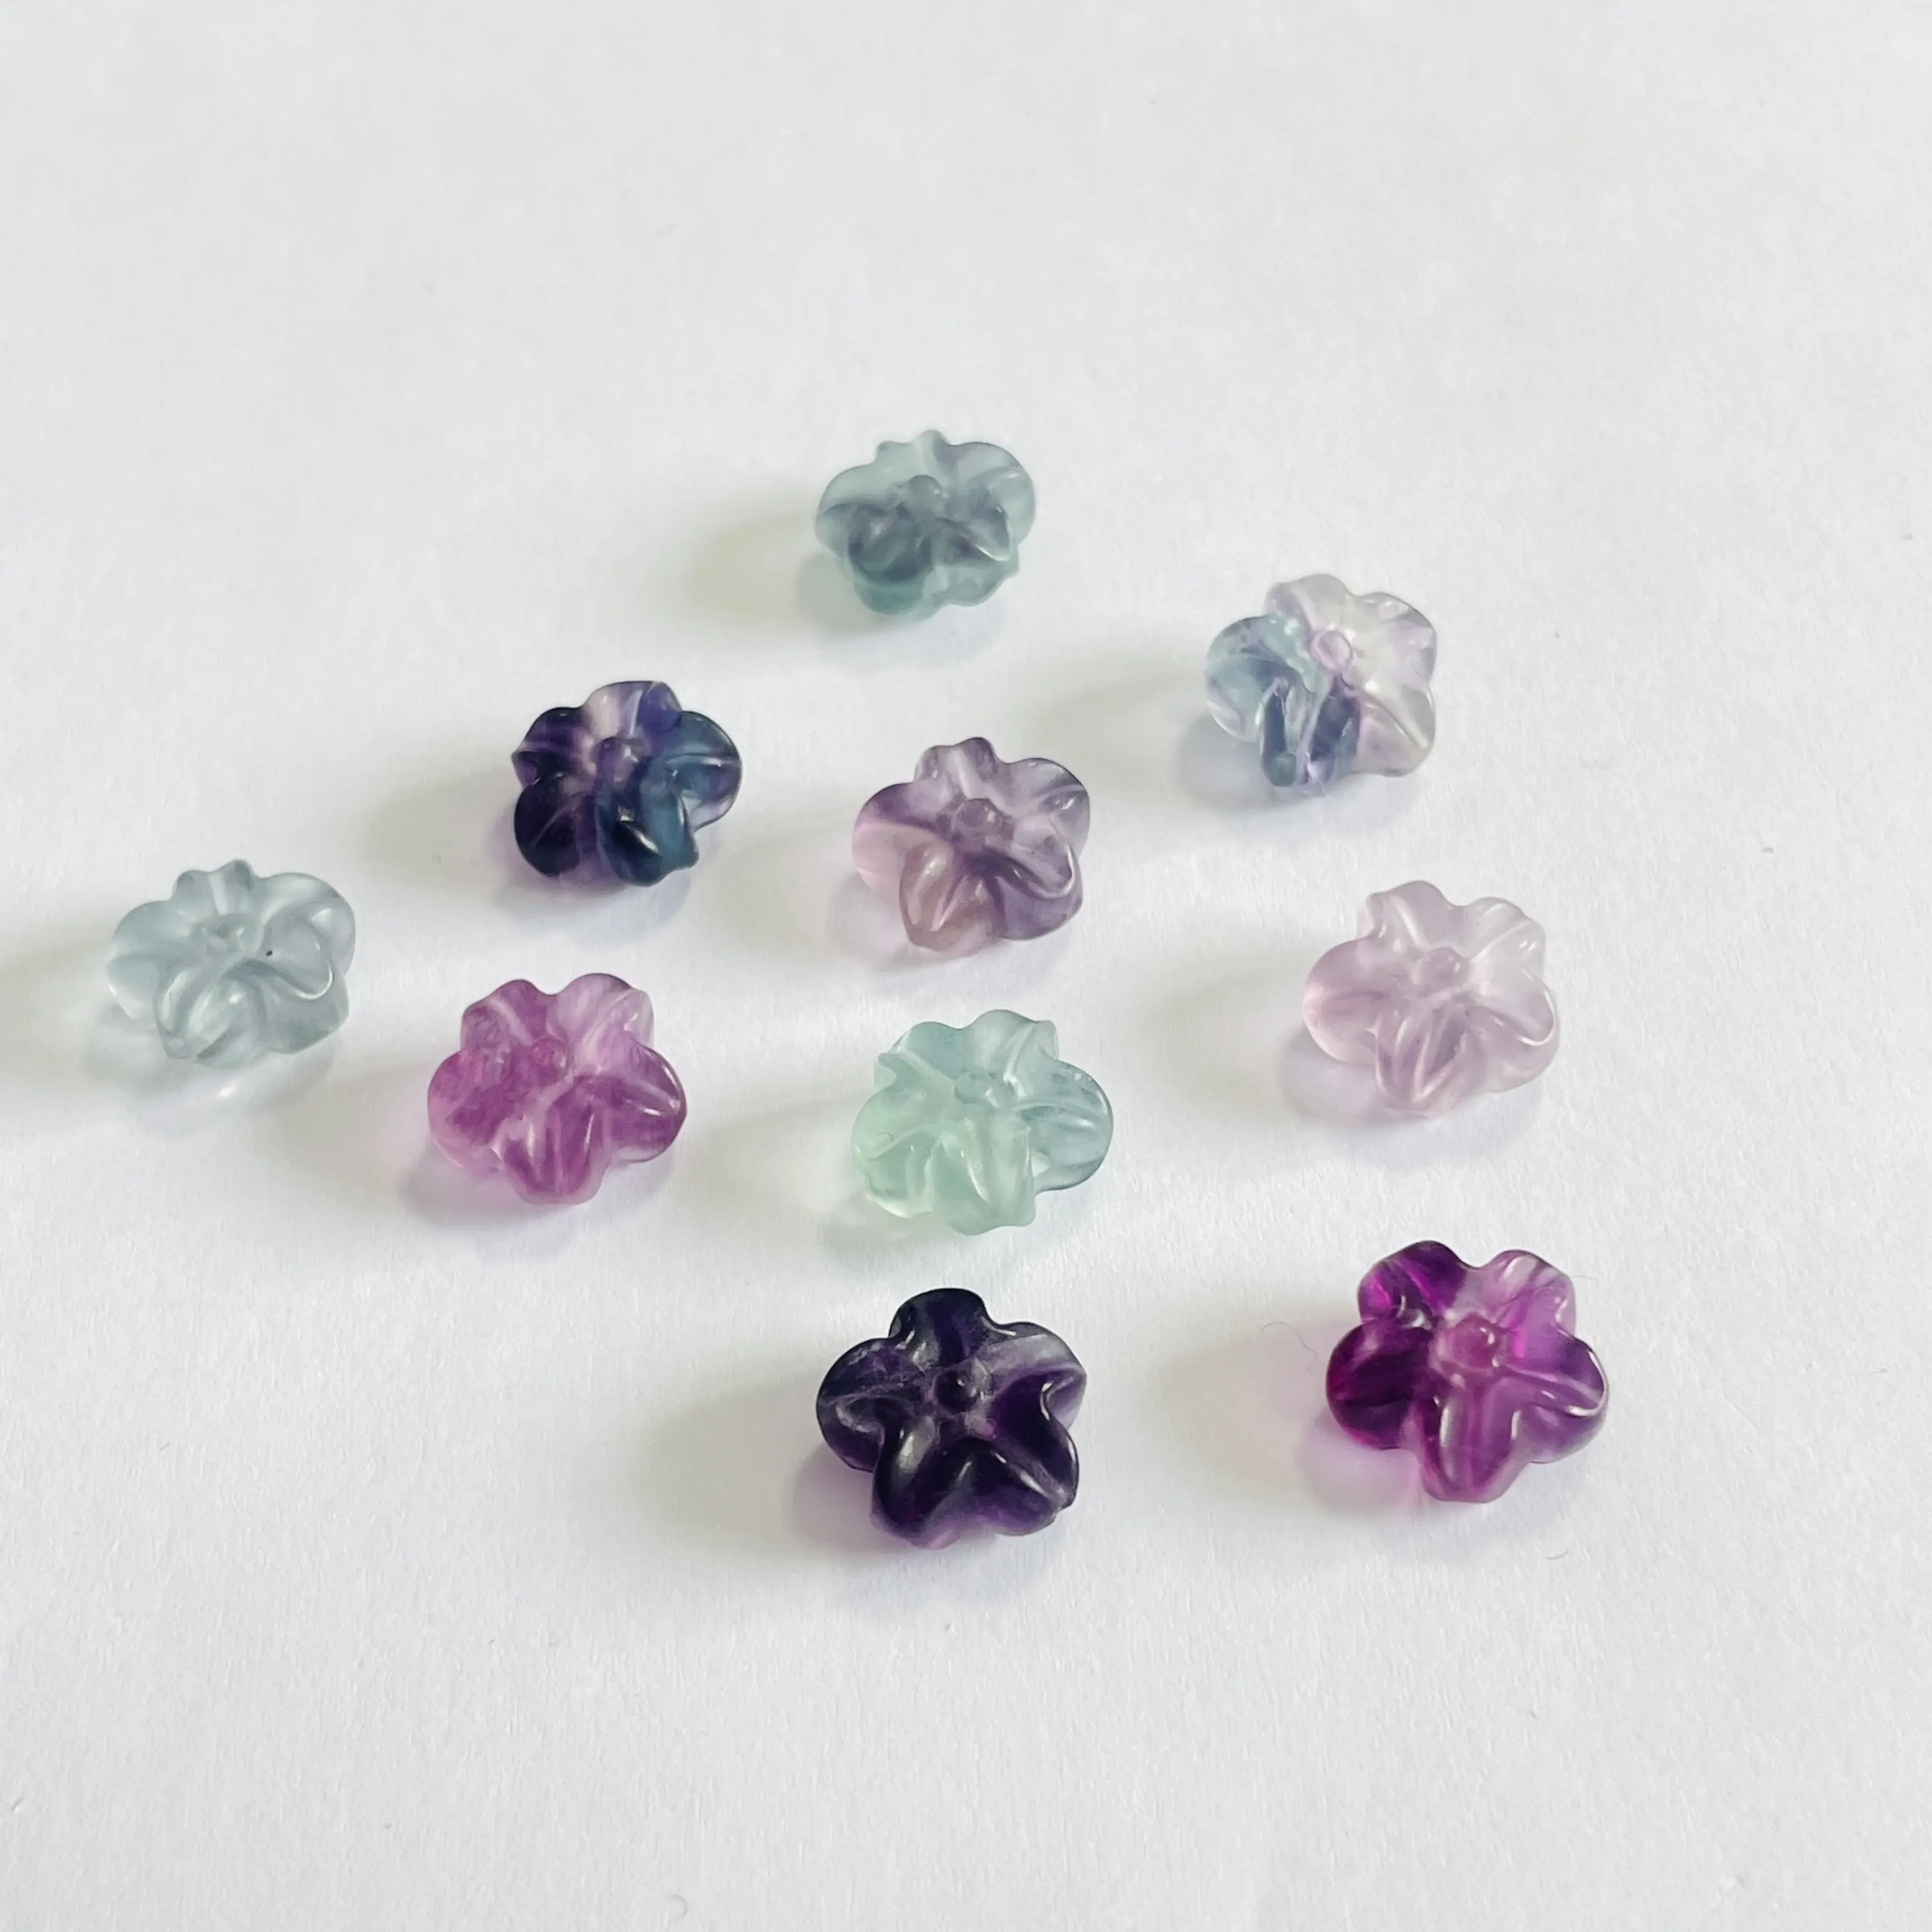 Commercio all'ingrosso naturale di cristallo curativo artigianato incisione arcobaleno Fluorite intaglio di fiori per Souvenir